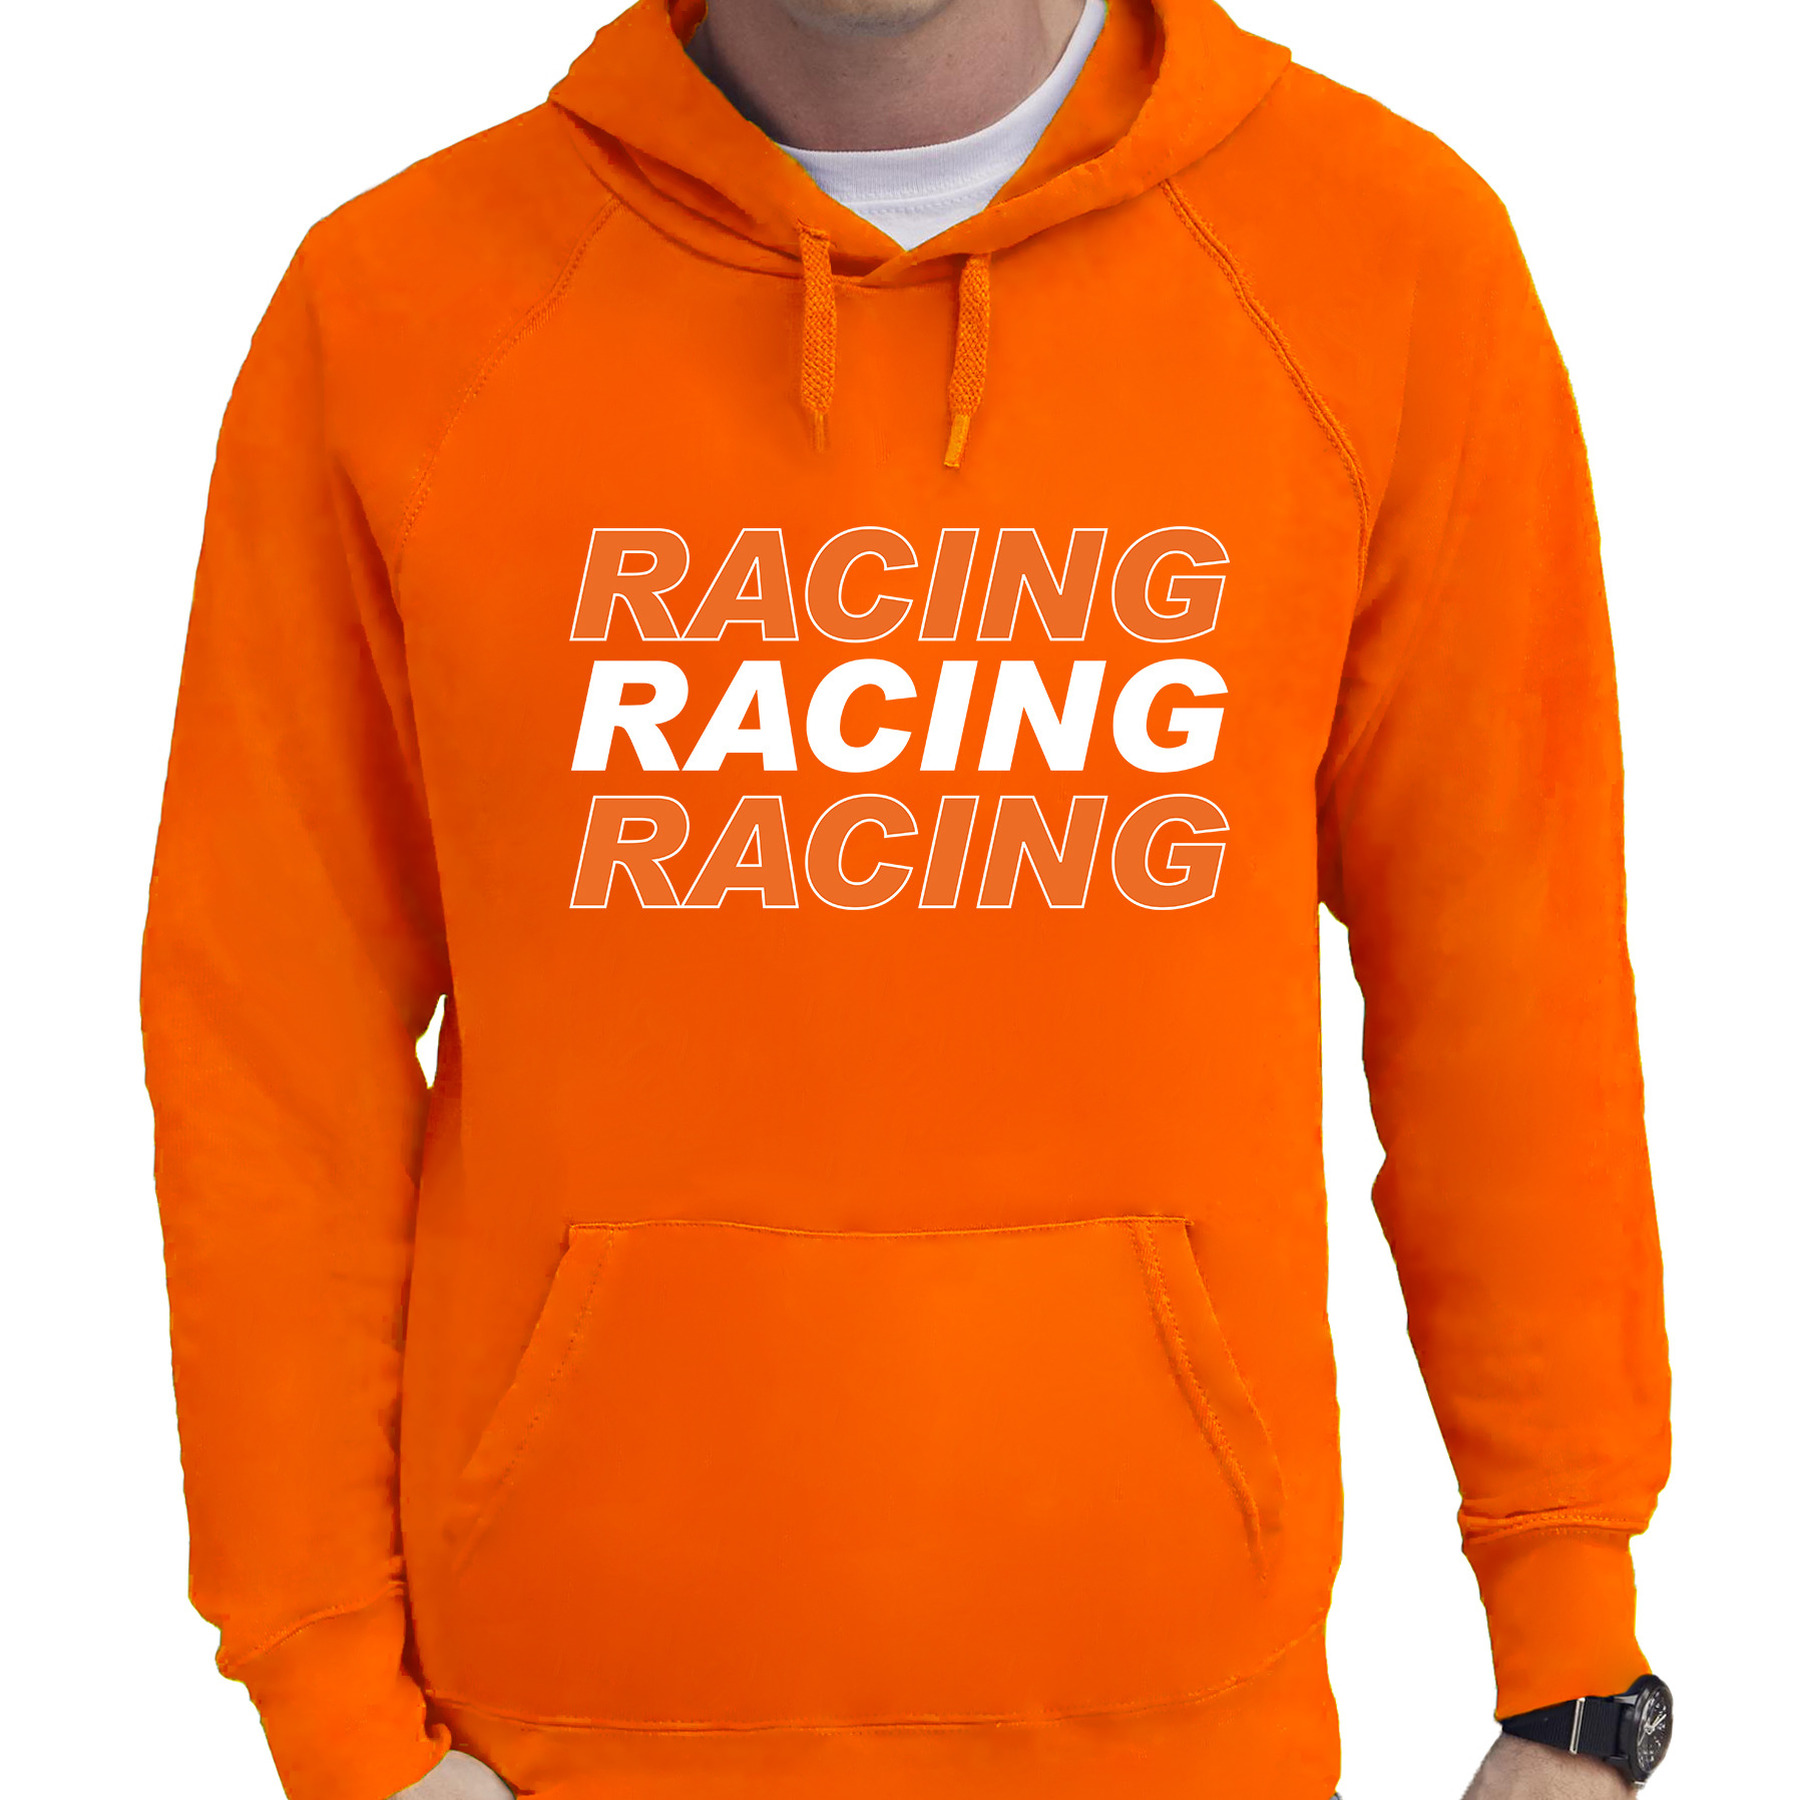 Racing supporter - race fan hoodie - hooded sweater oranje voor heren